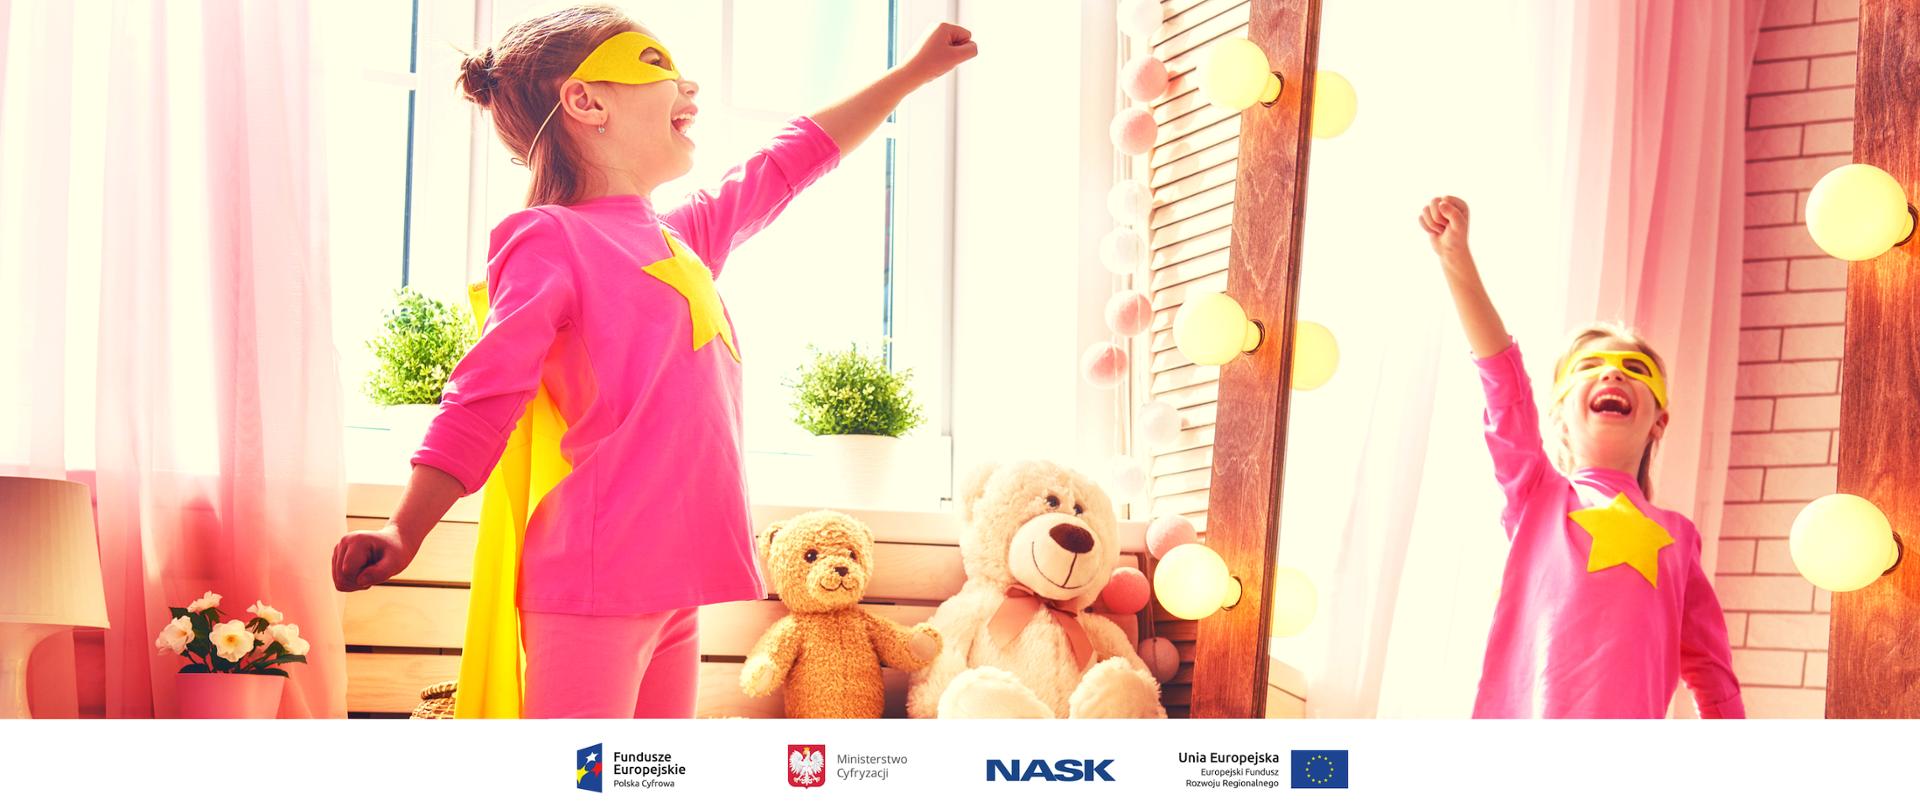 Na zdjęciu widać dziewczynkę przebraną za superbohatera. Na dole zdjęcia umieszczone są logotypy: Fundusze Europejskie. Polska Cyfrowa, Ministerstwo Cyfryzacji, NASK oraz Unia Europejska. Europejski Fundusz Rozwoju Regionalnego. 